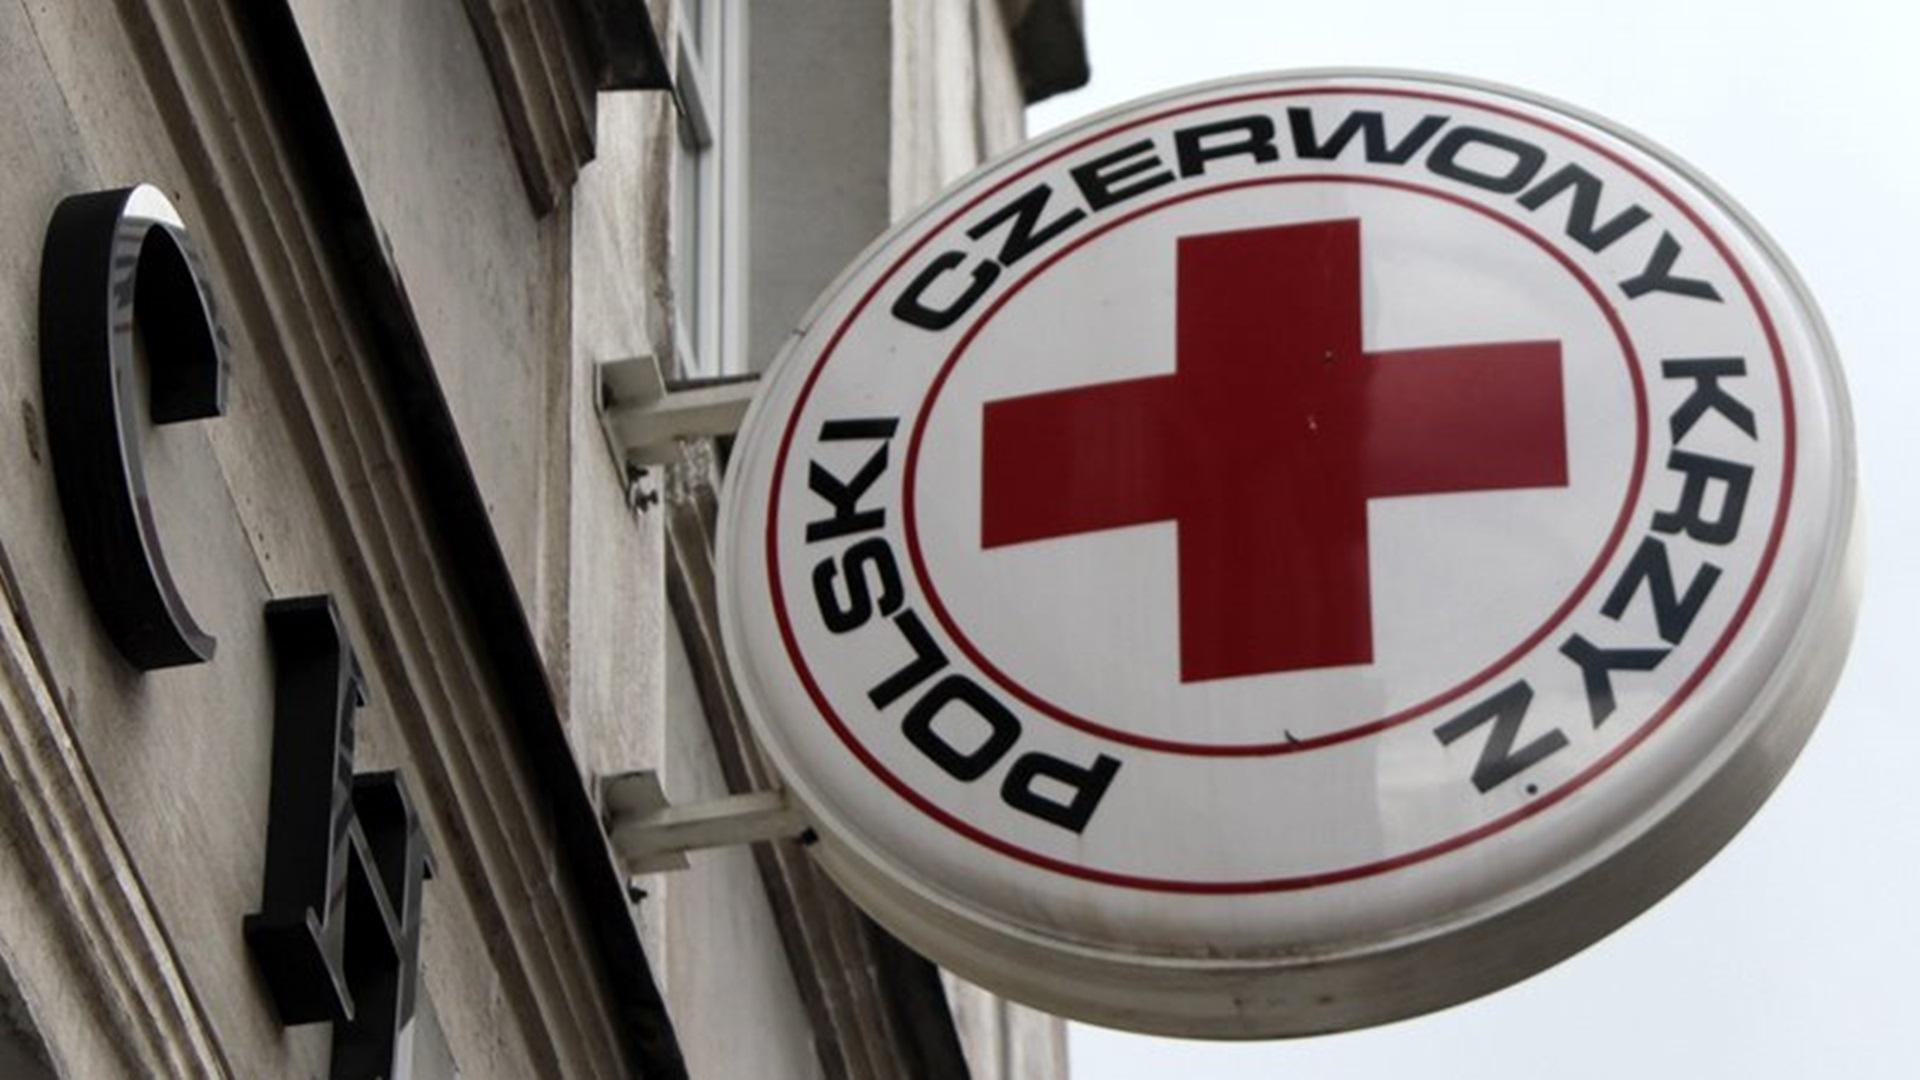 Як отримати 710 злотих від Польського Червоного Хреста у Лодзі  вимоги та умови для українців - Закордон